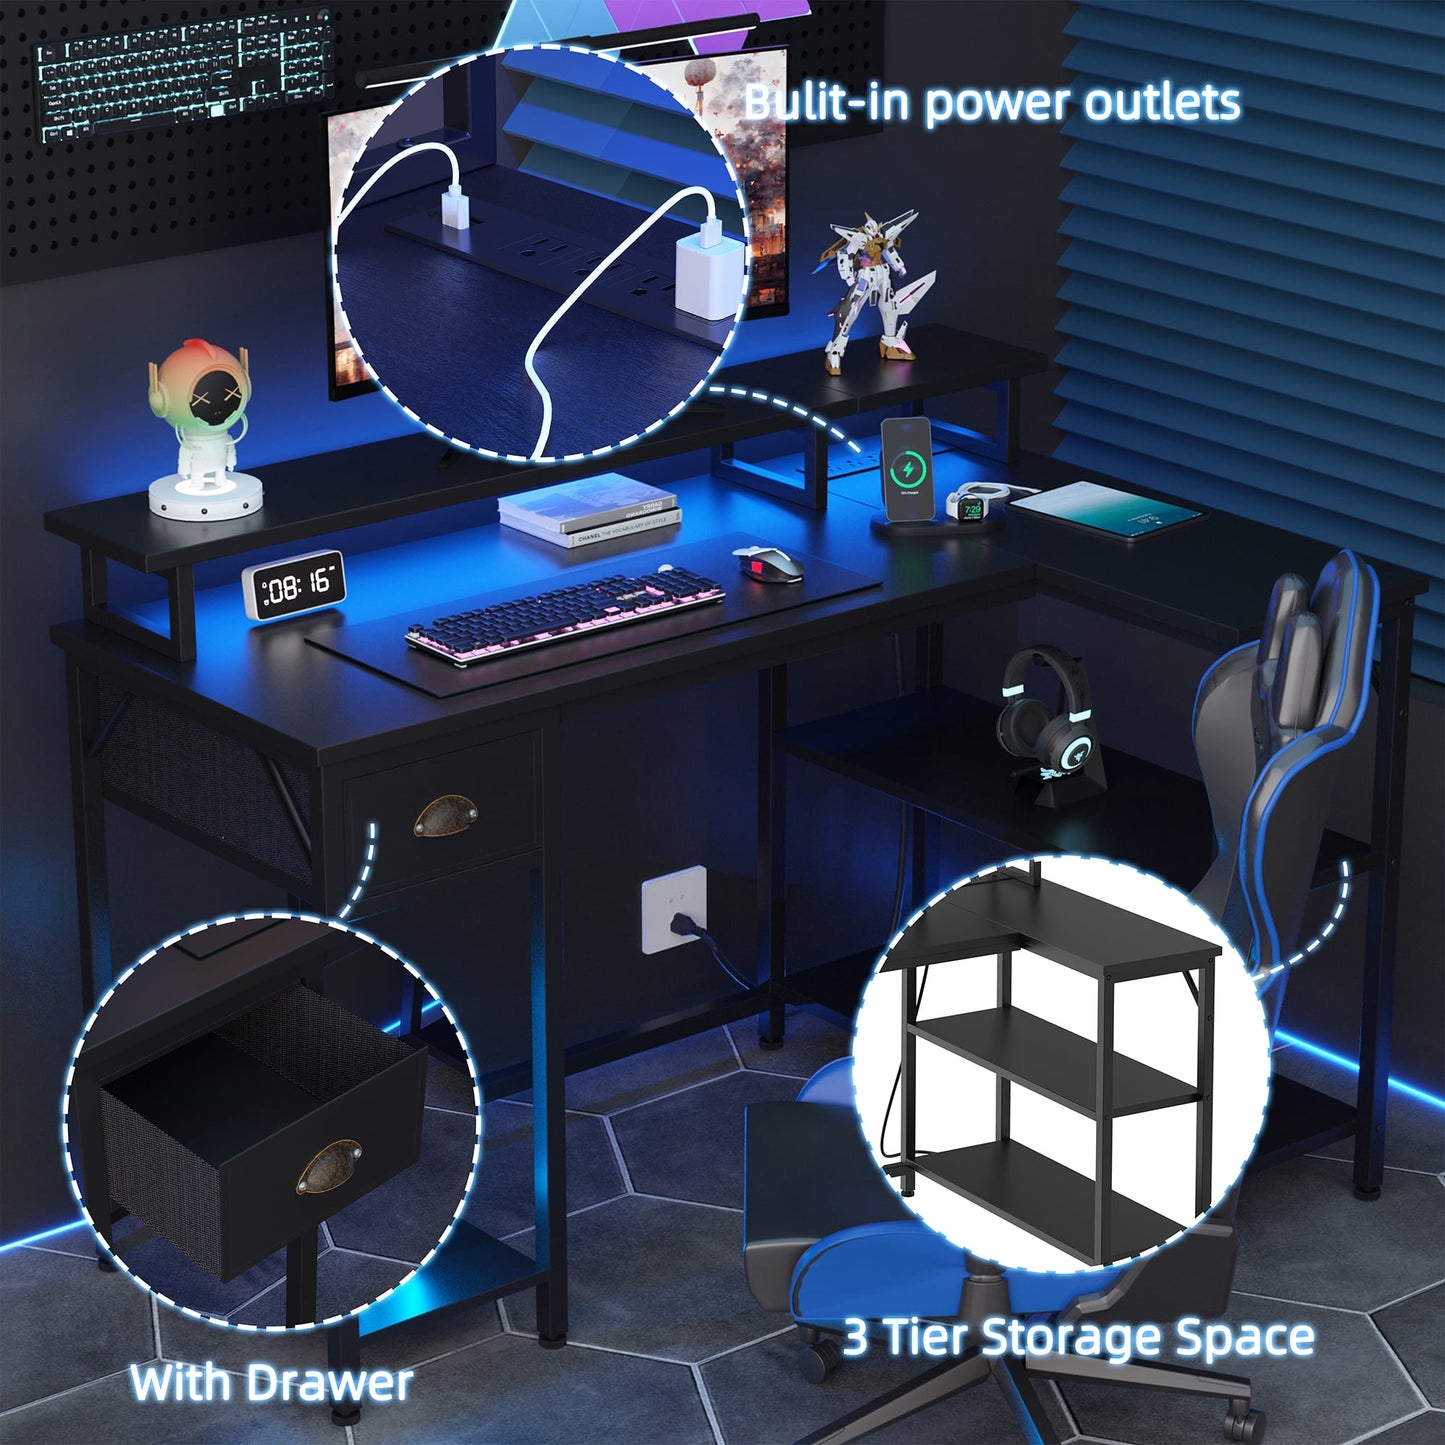 Walsunny L Shaped 55 inch Home Office Desks, Writing Gaming Desk Large Work Desk Study Workstation, Laptop Stand for Desk Grey